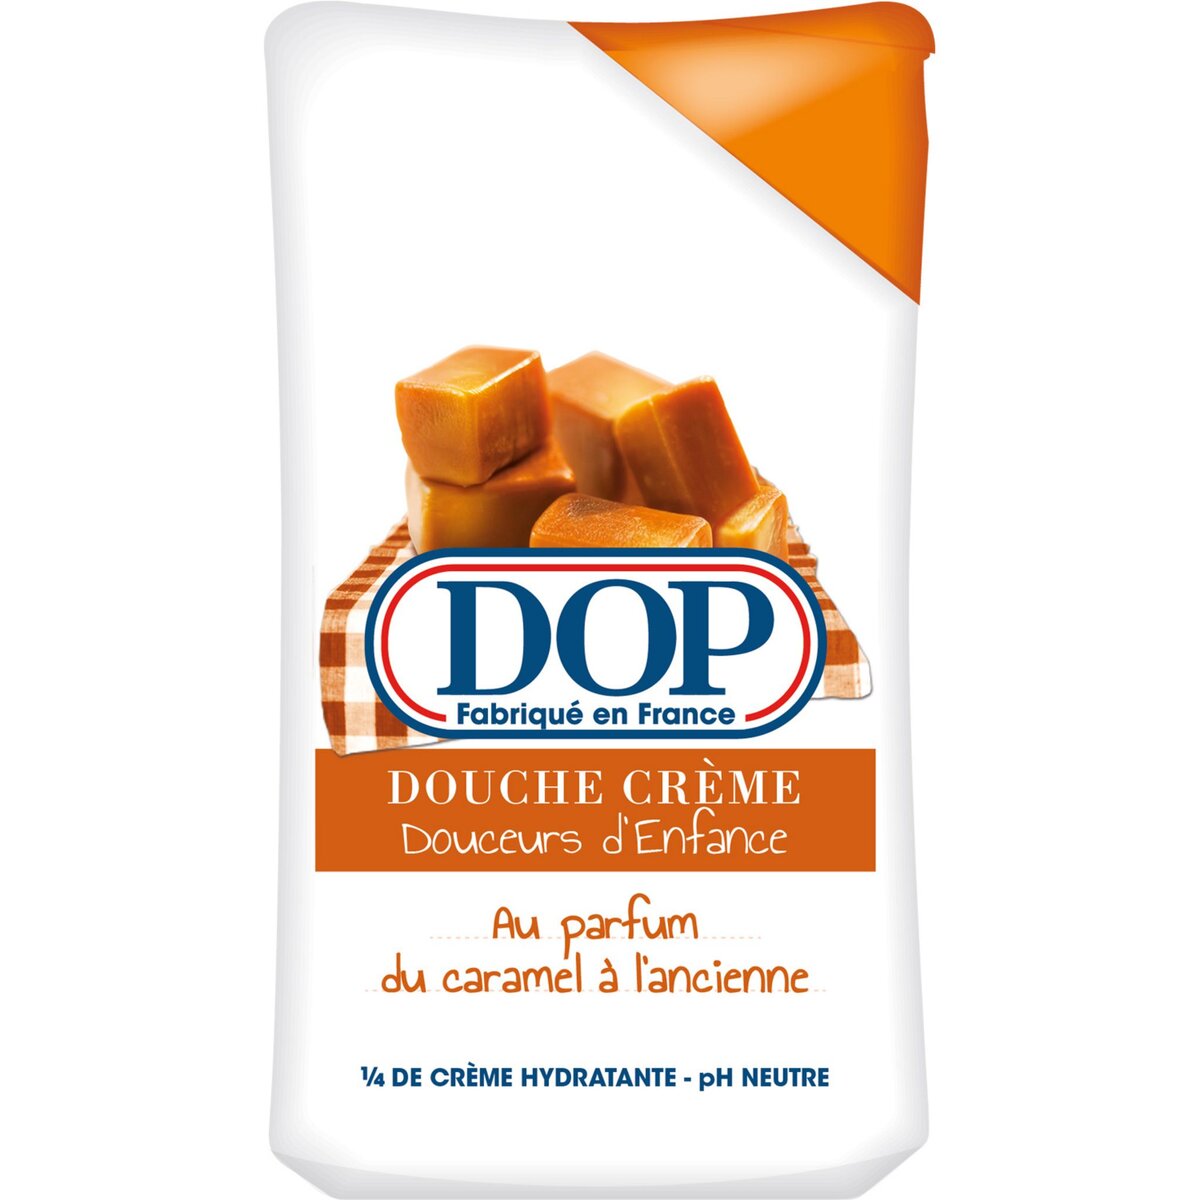 DOP Douceurs d'enfance gel douche crème parfum caramel à l'ancienne 250ml